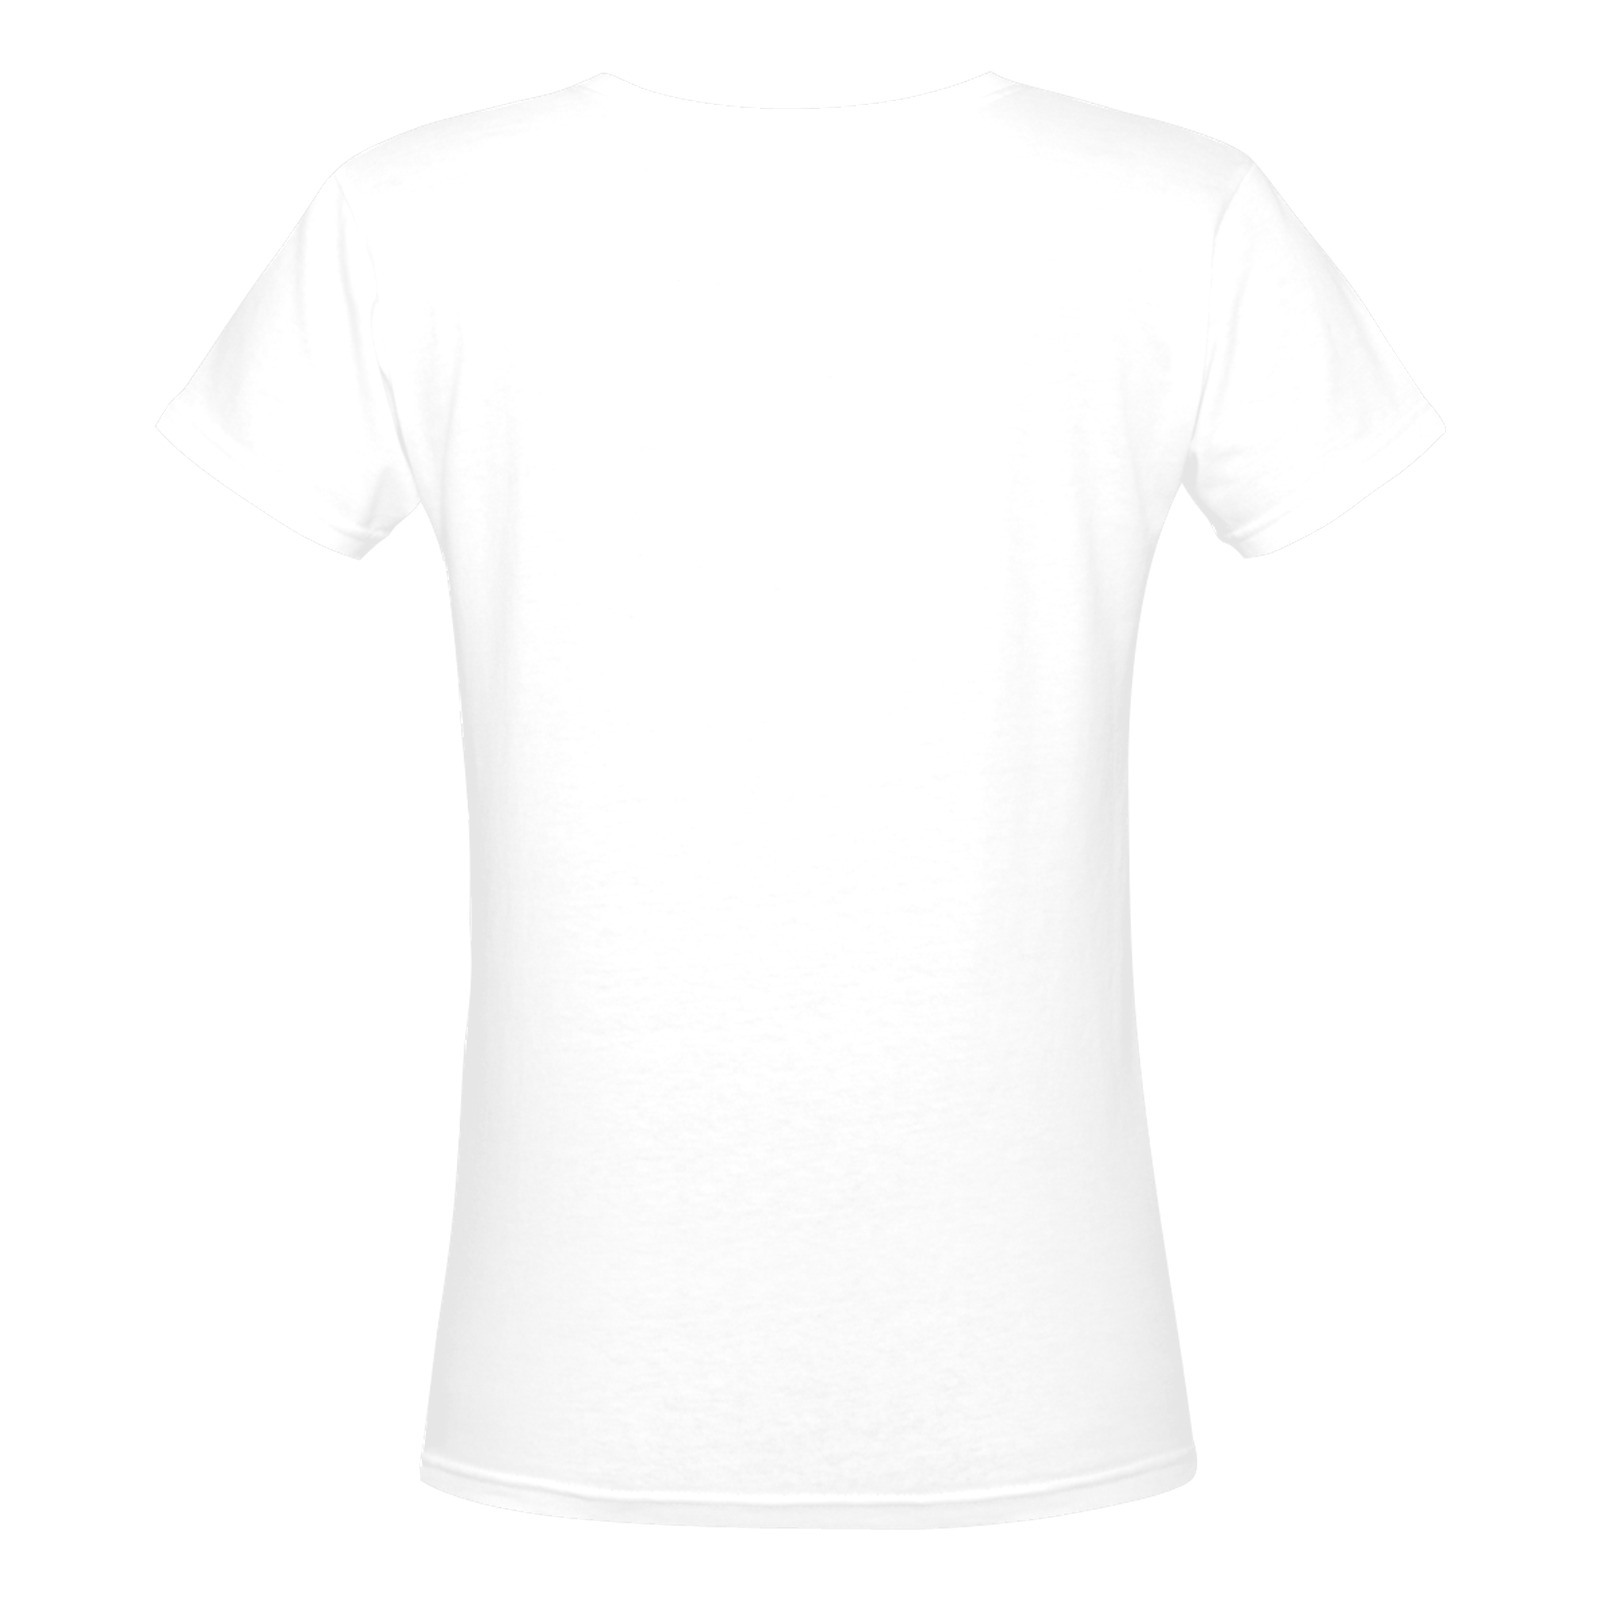 RAWRVCUT Women's Deep V-neck T-shirt (Model T19)